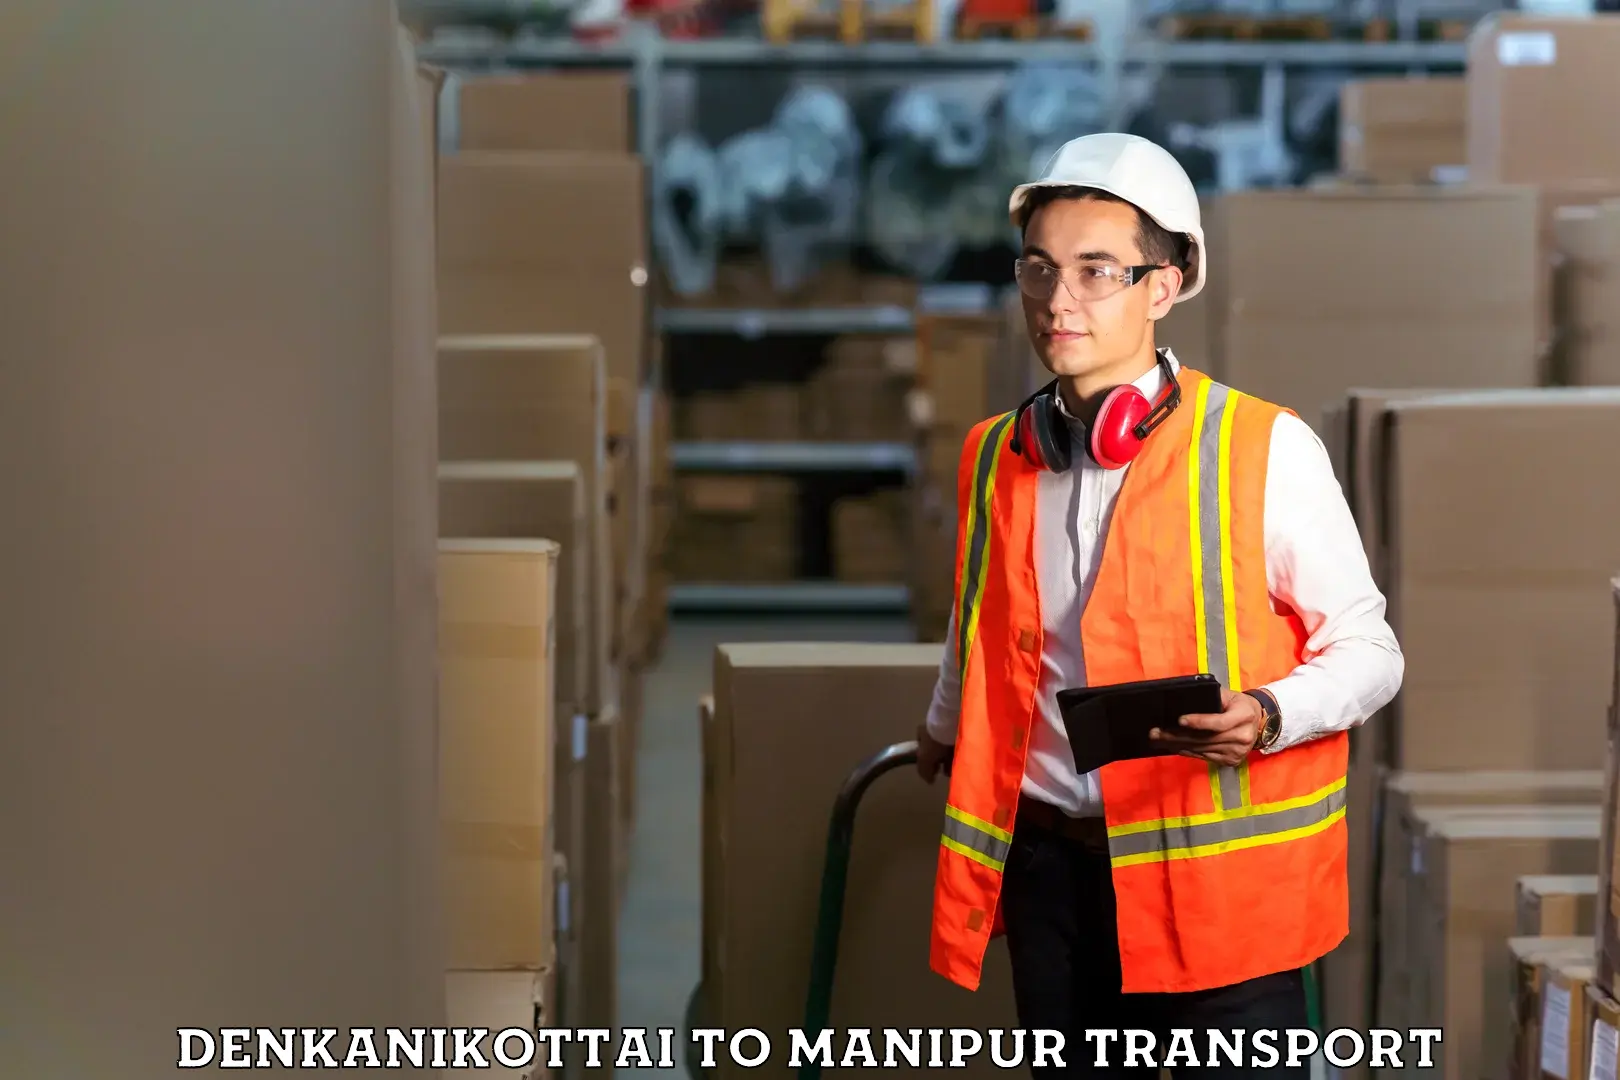 Container transport service Denkanikottai to Thoubal